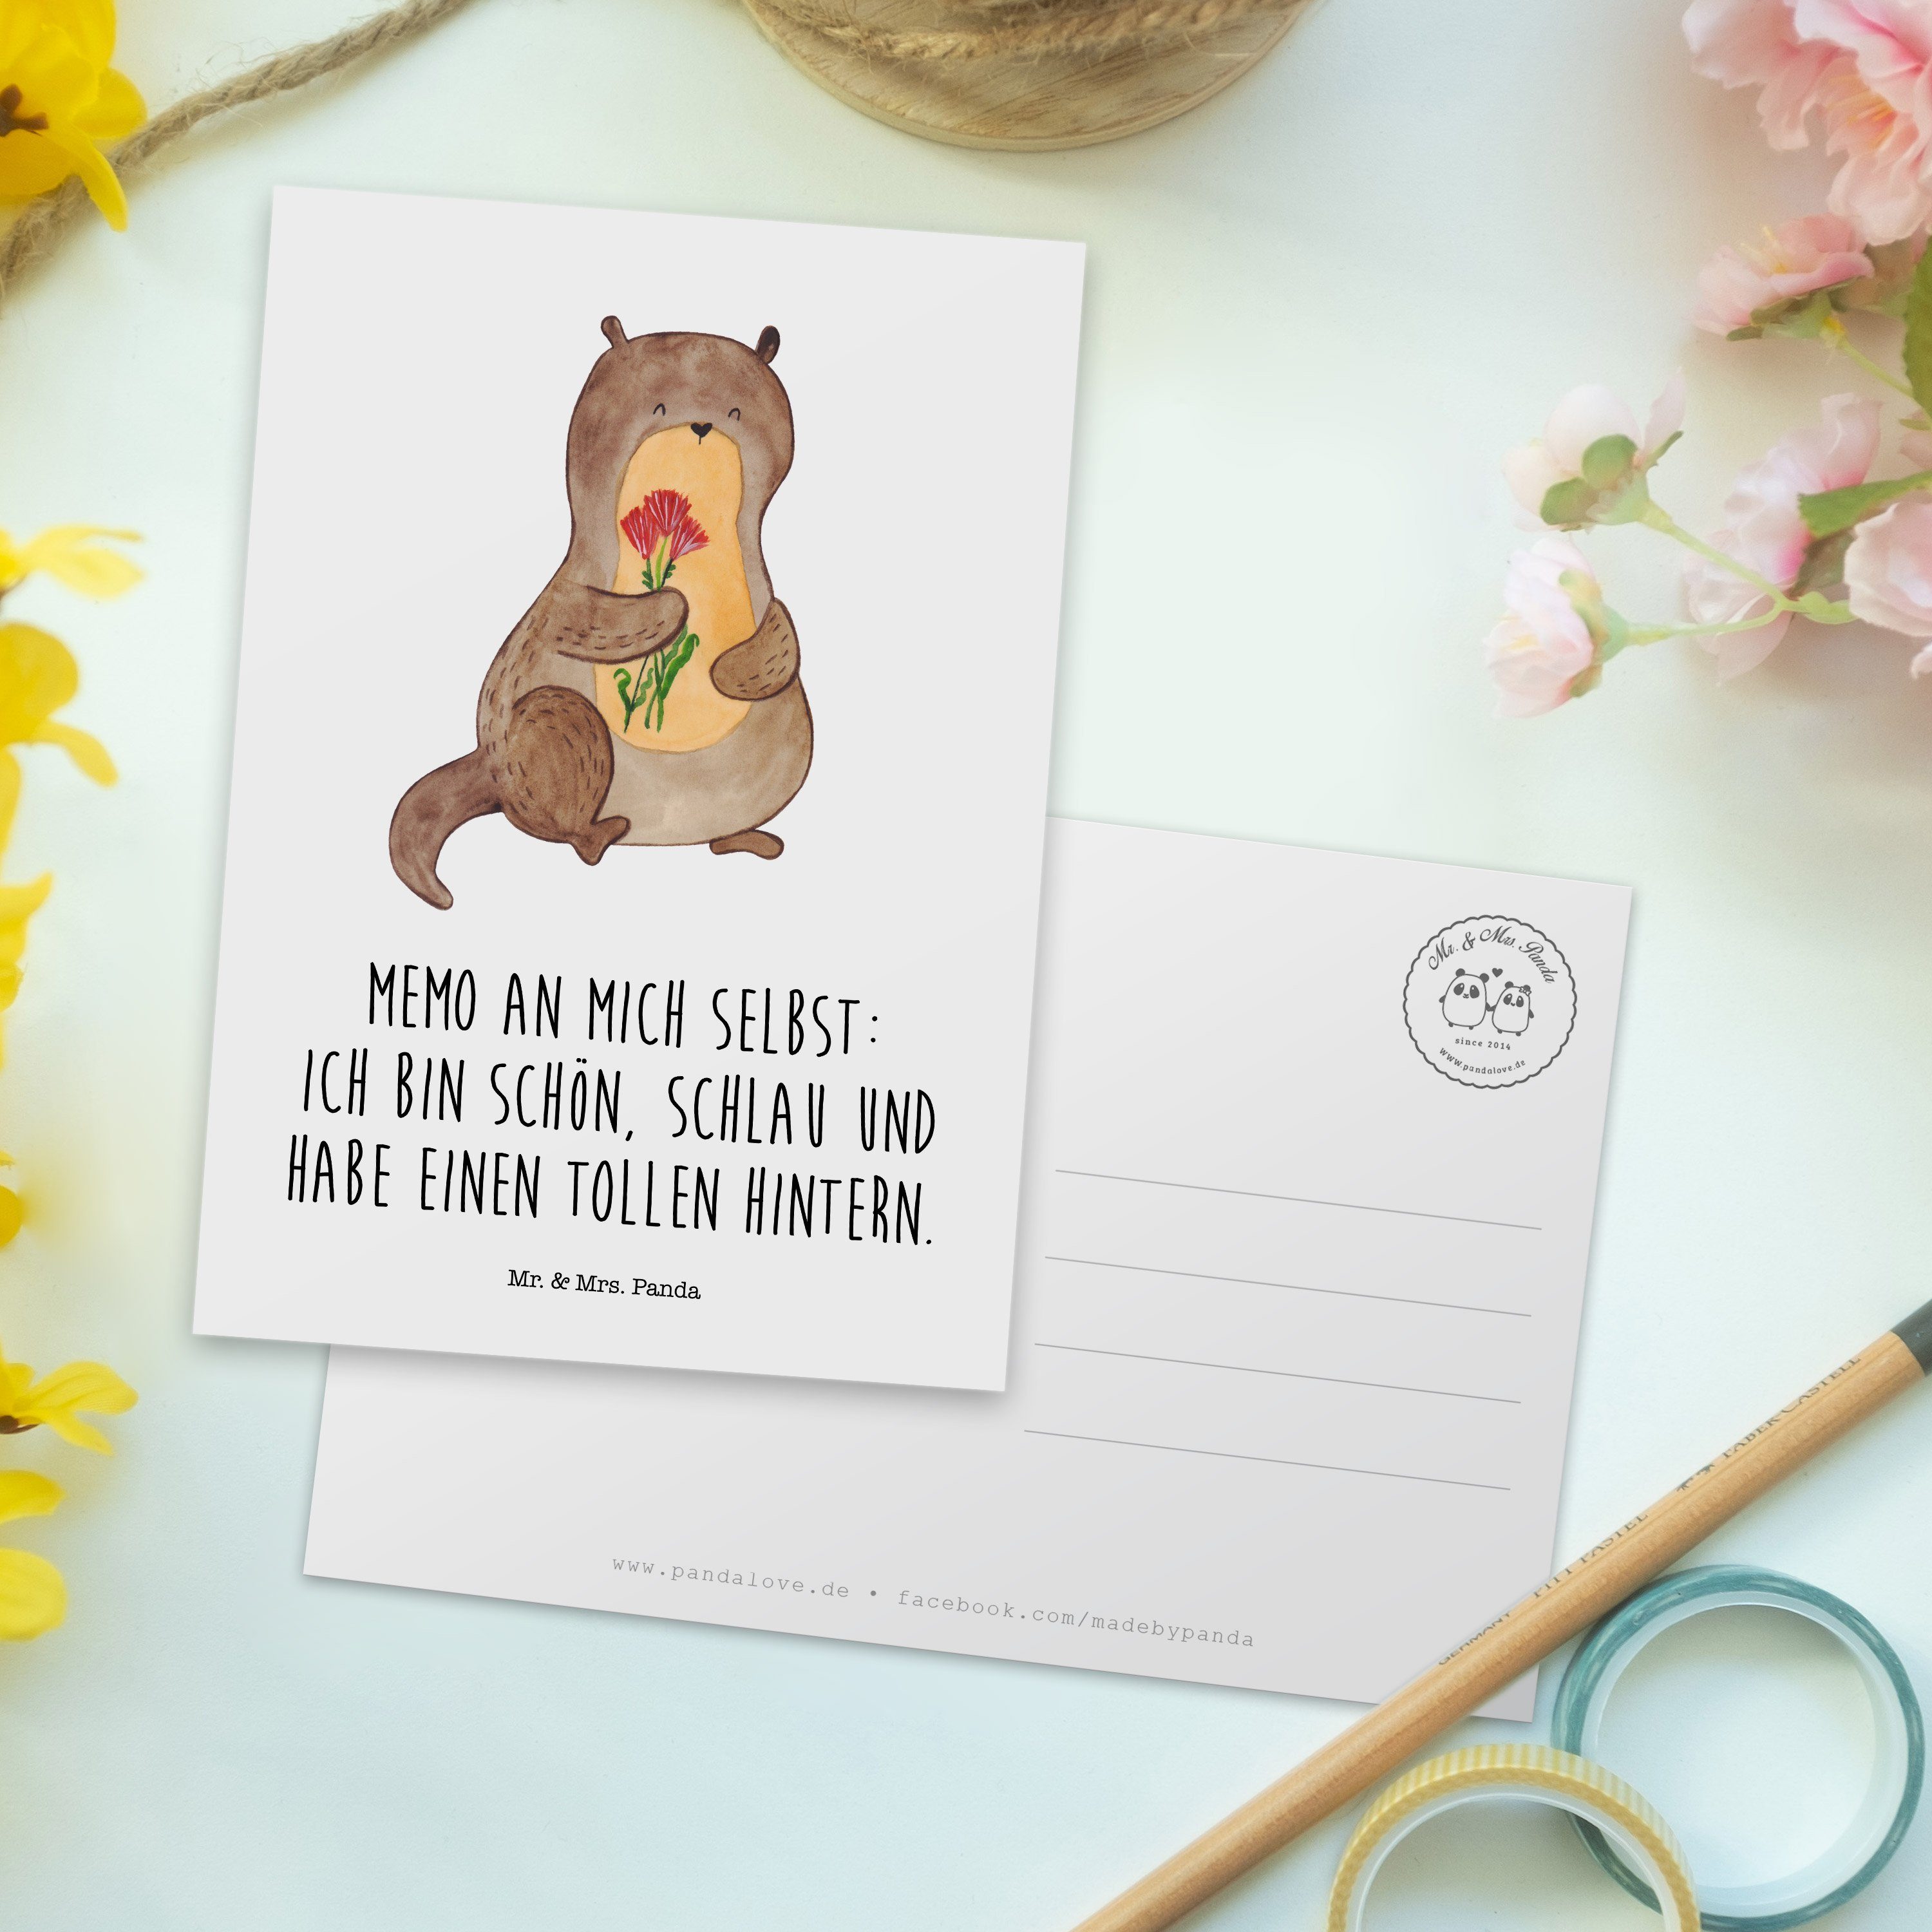 Mr. & - Panda Geburtstagskarte, Geschenk, Otter Einladungskar Blumenstrauß Weiß Postkarte - Mrs